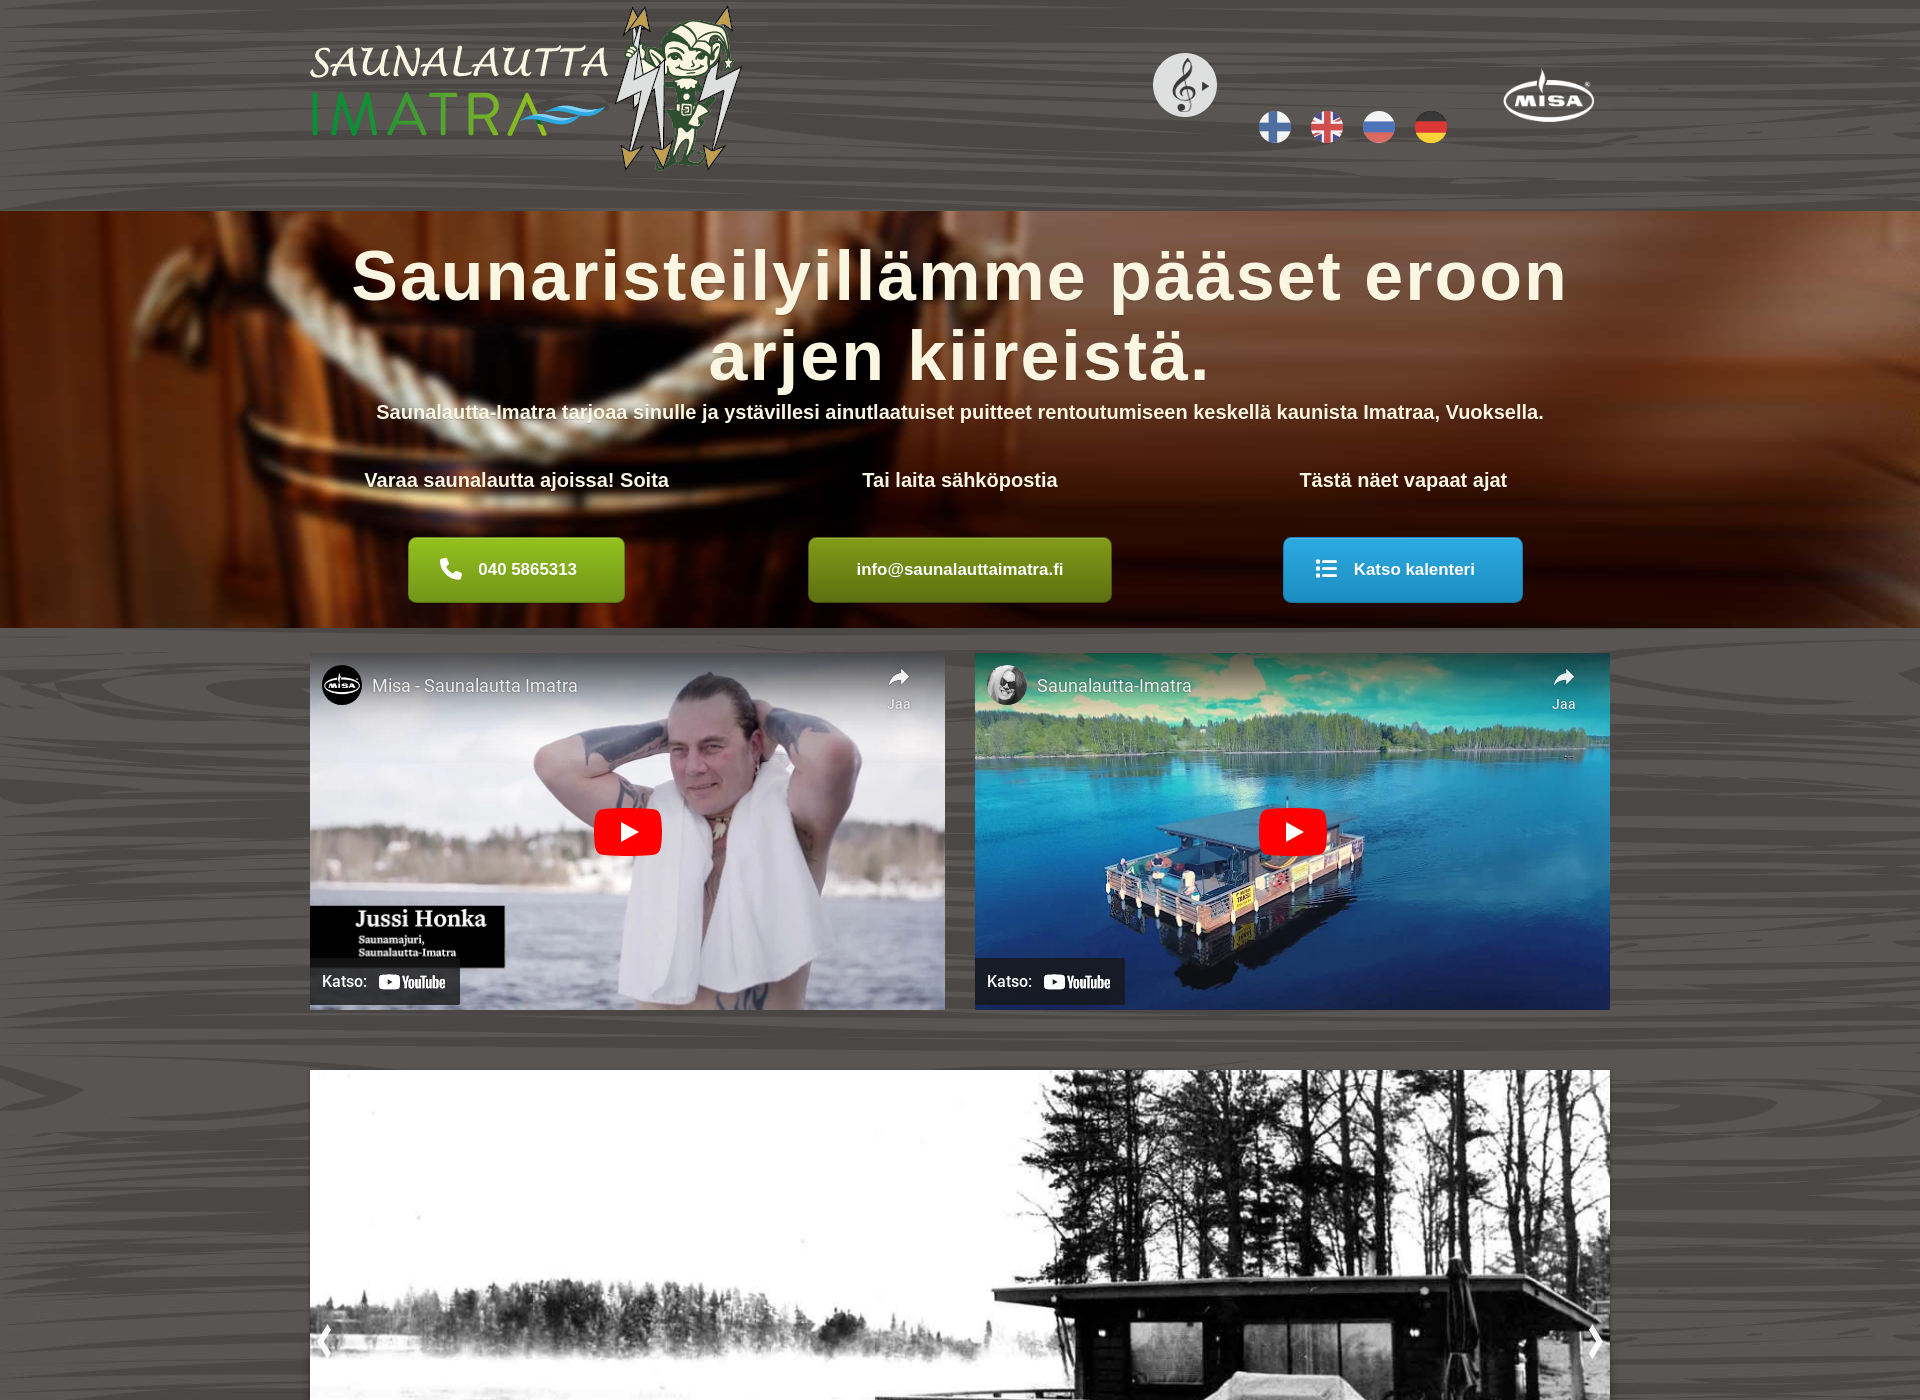 Skärmdump för saunalauttaimatra.fi